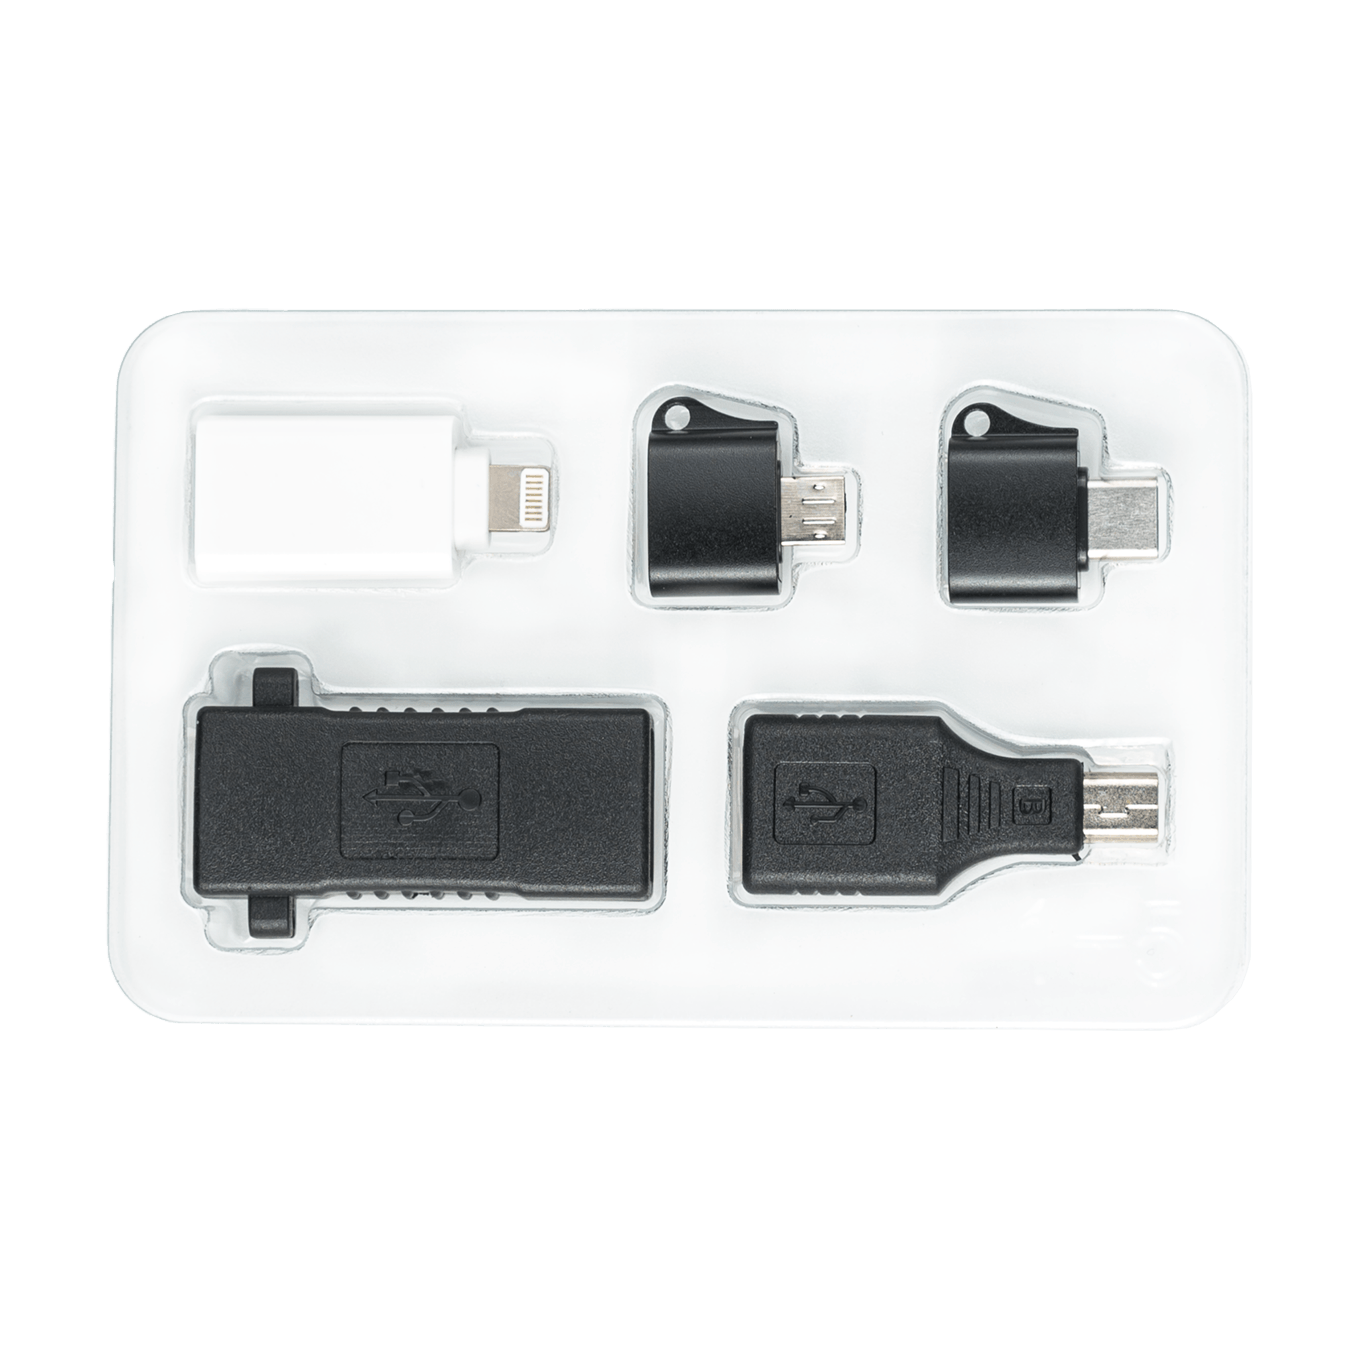  USB Killer Pro Kit - Standard : Electronics